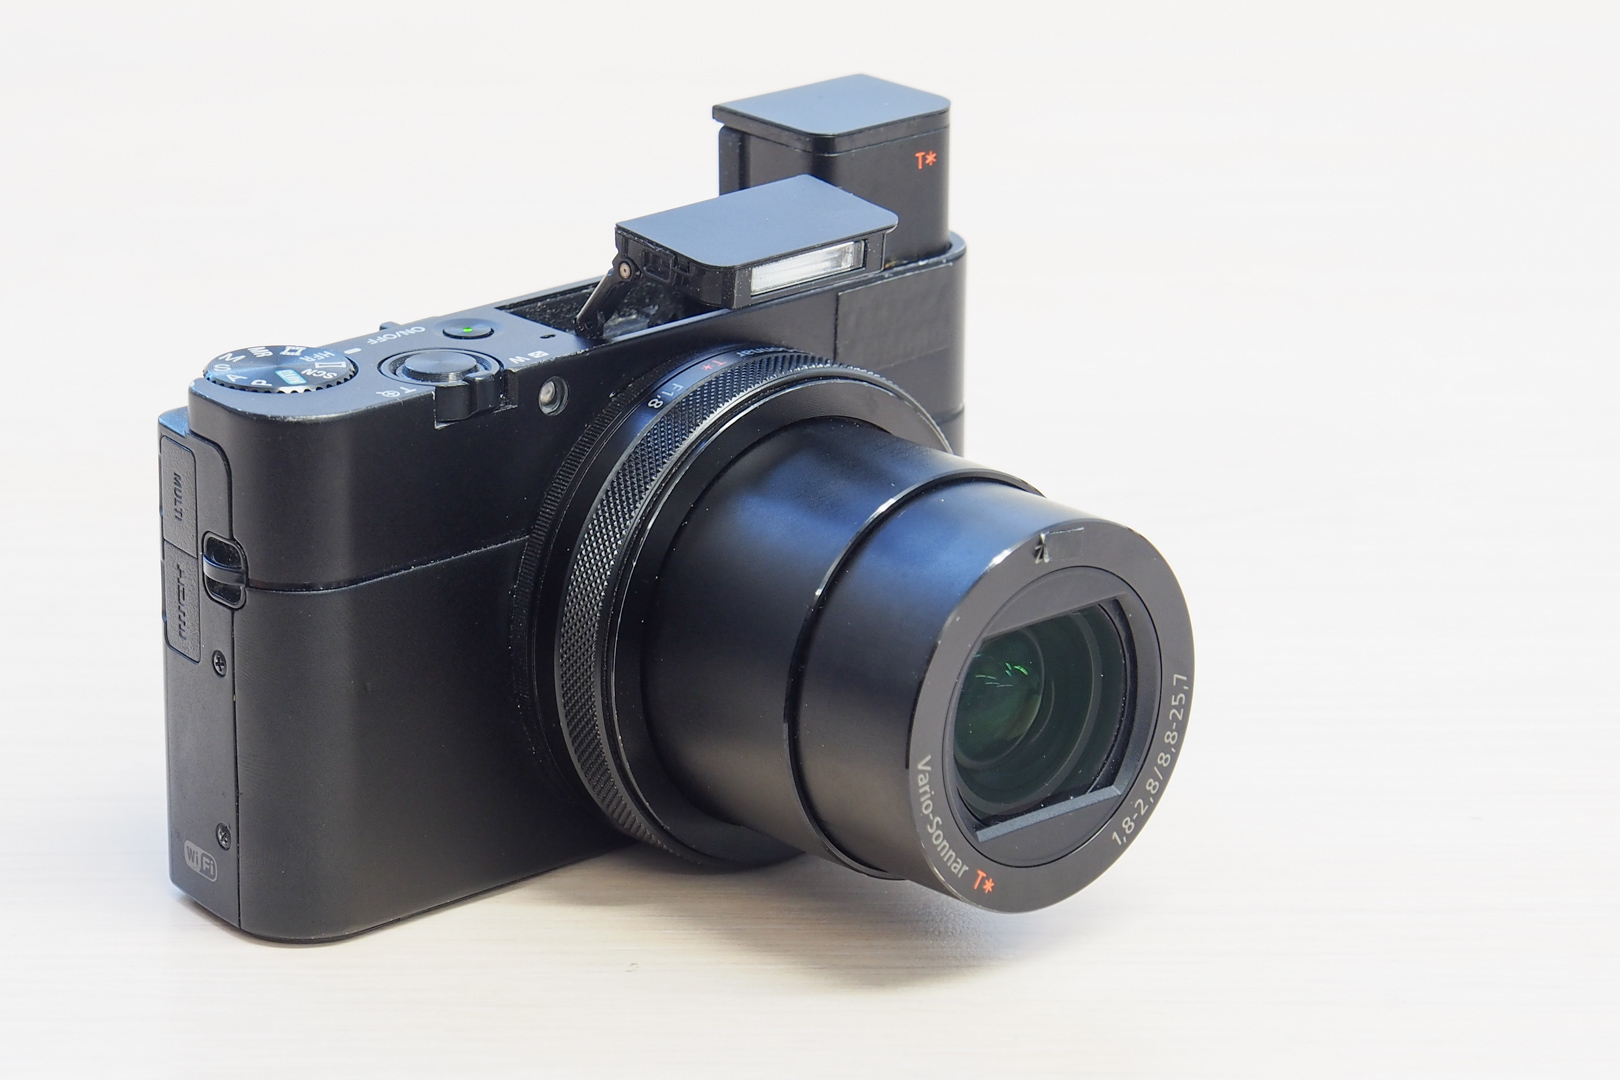 Kompaktni fotoaparat crne boje sa izvučenim objektivom, bljeskalicom i digitalnim tražilom.